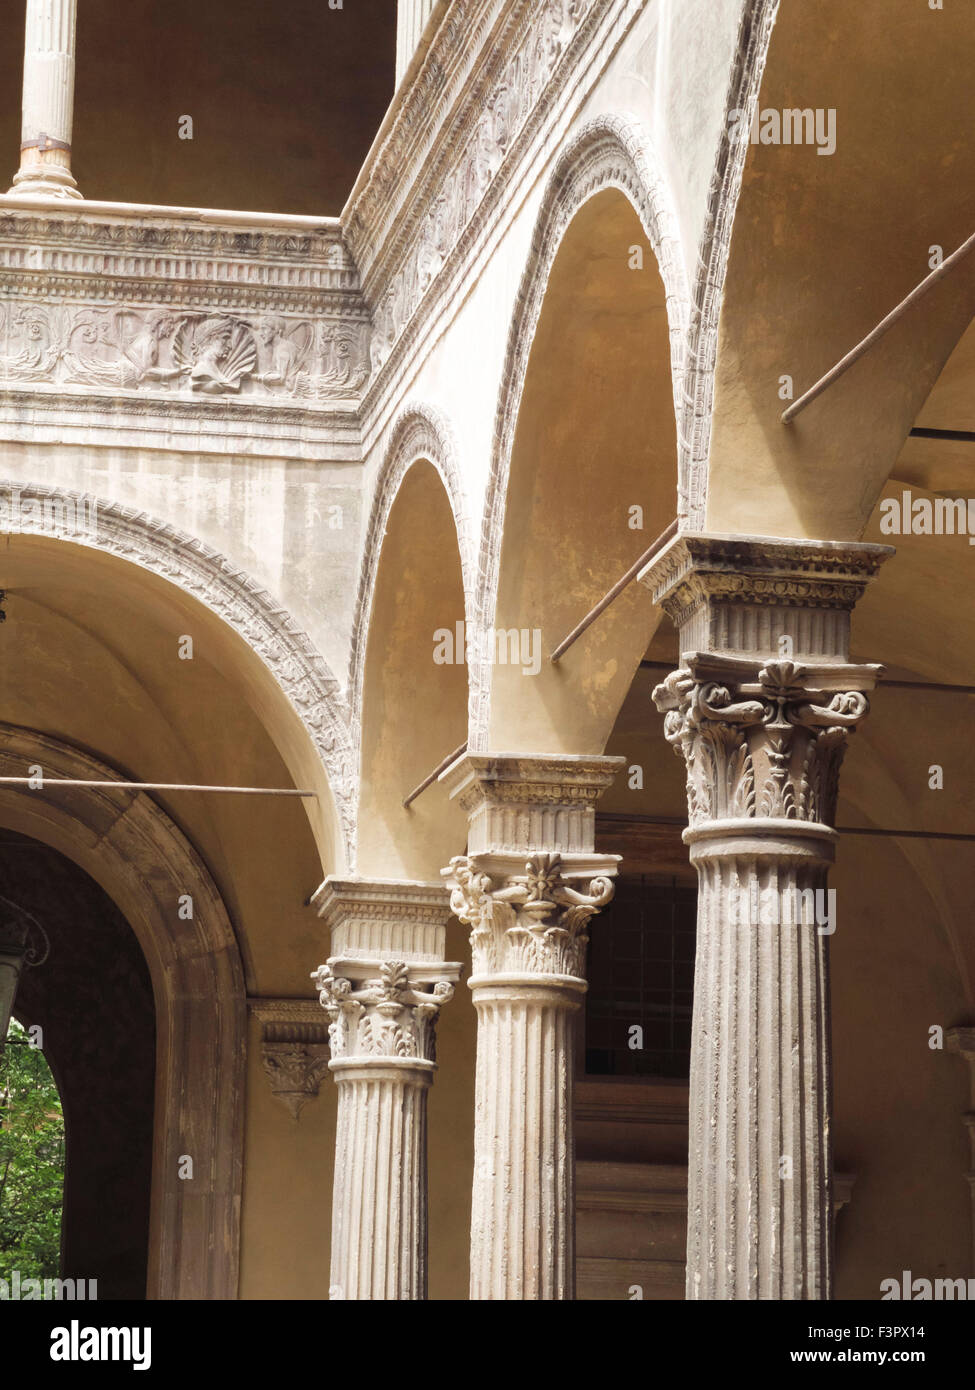 Italy, Emilia-Romagna region, Bologna - architecture Stock Photo